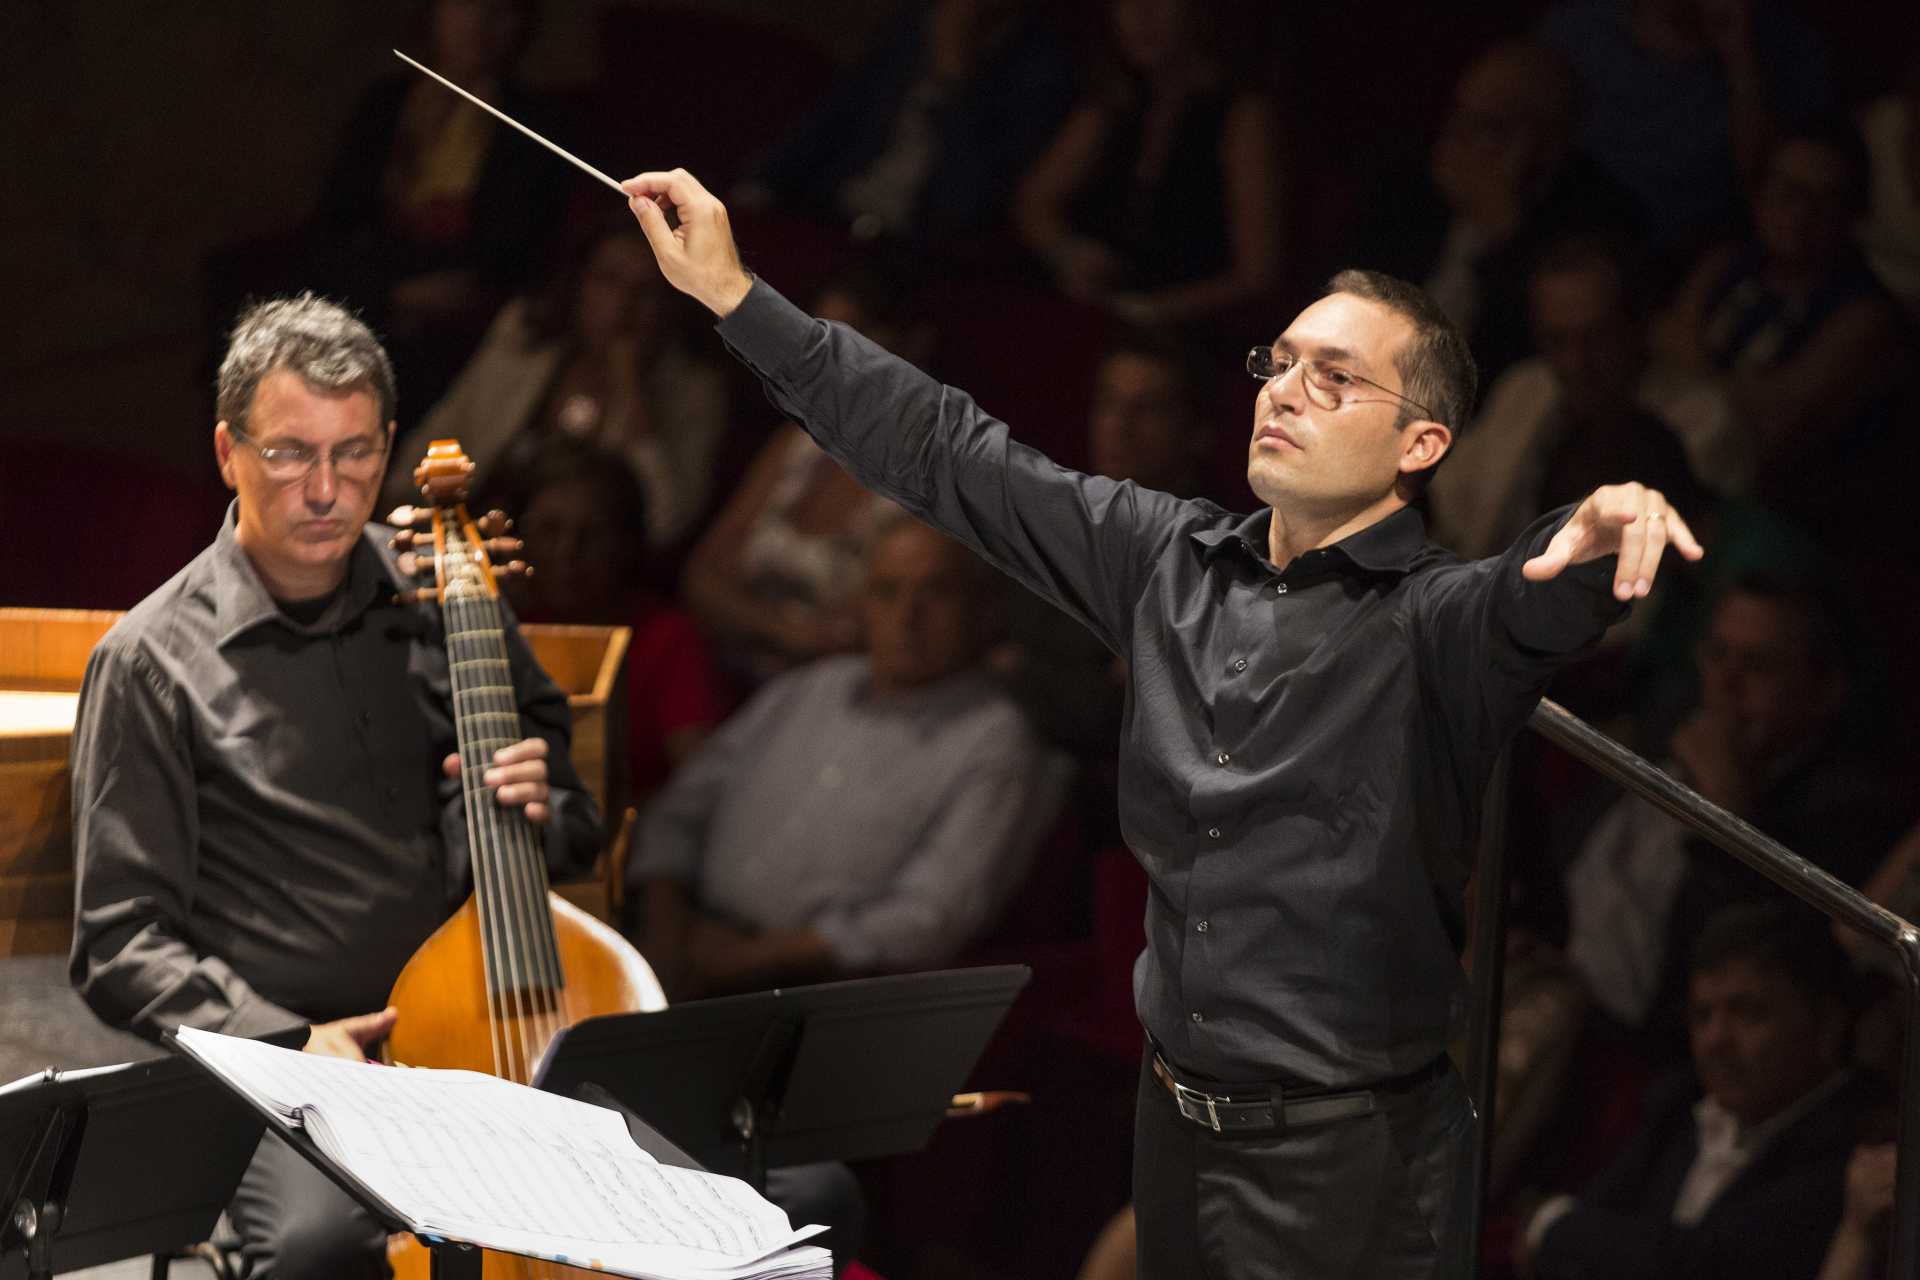 In programma l’ultimo appuntamento di febbraio per la stagione in streaming del Teatro di San Carlo, con l'esecuzione della Sinfonia n. 9 in do maggiore D. 944 “La Grande” di Franz Schubert.